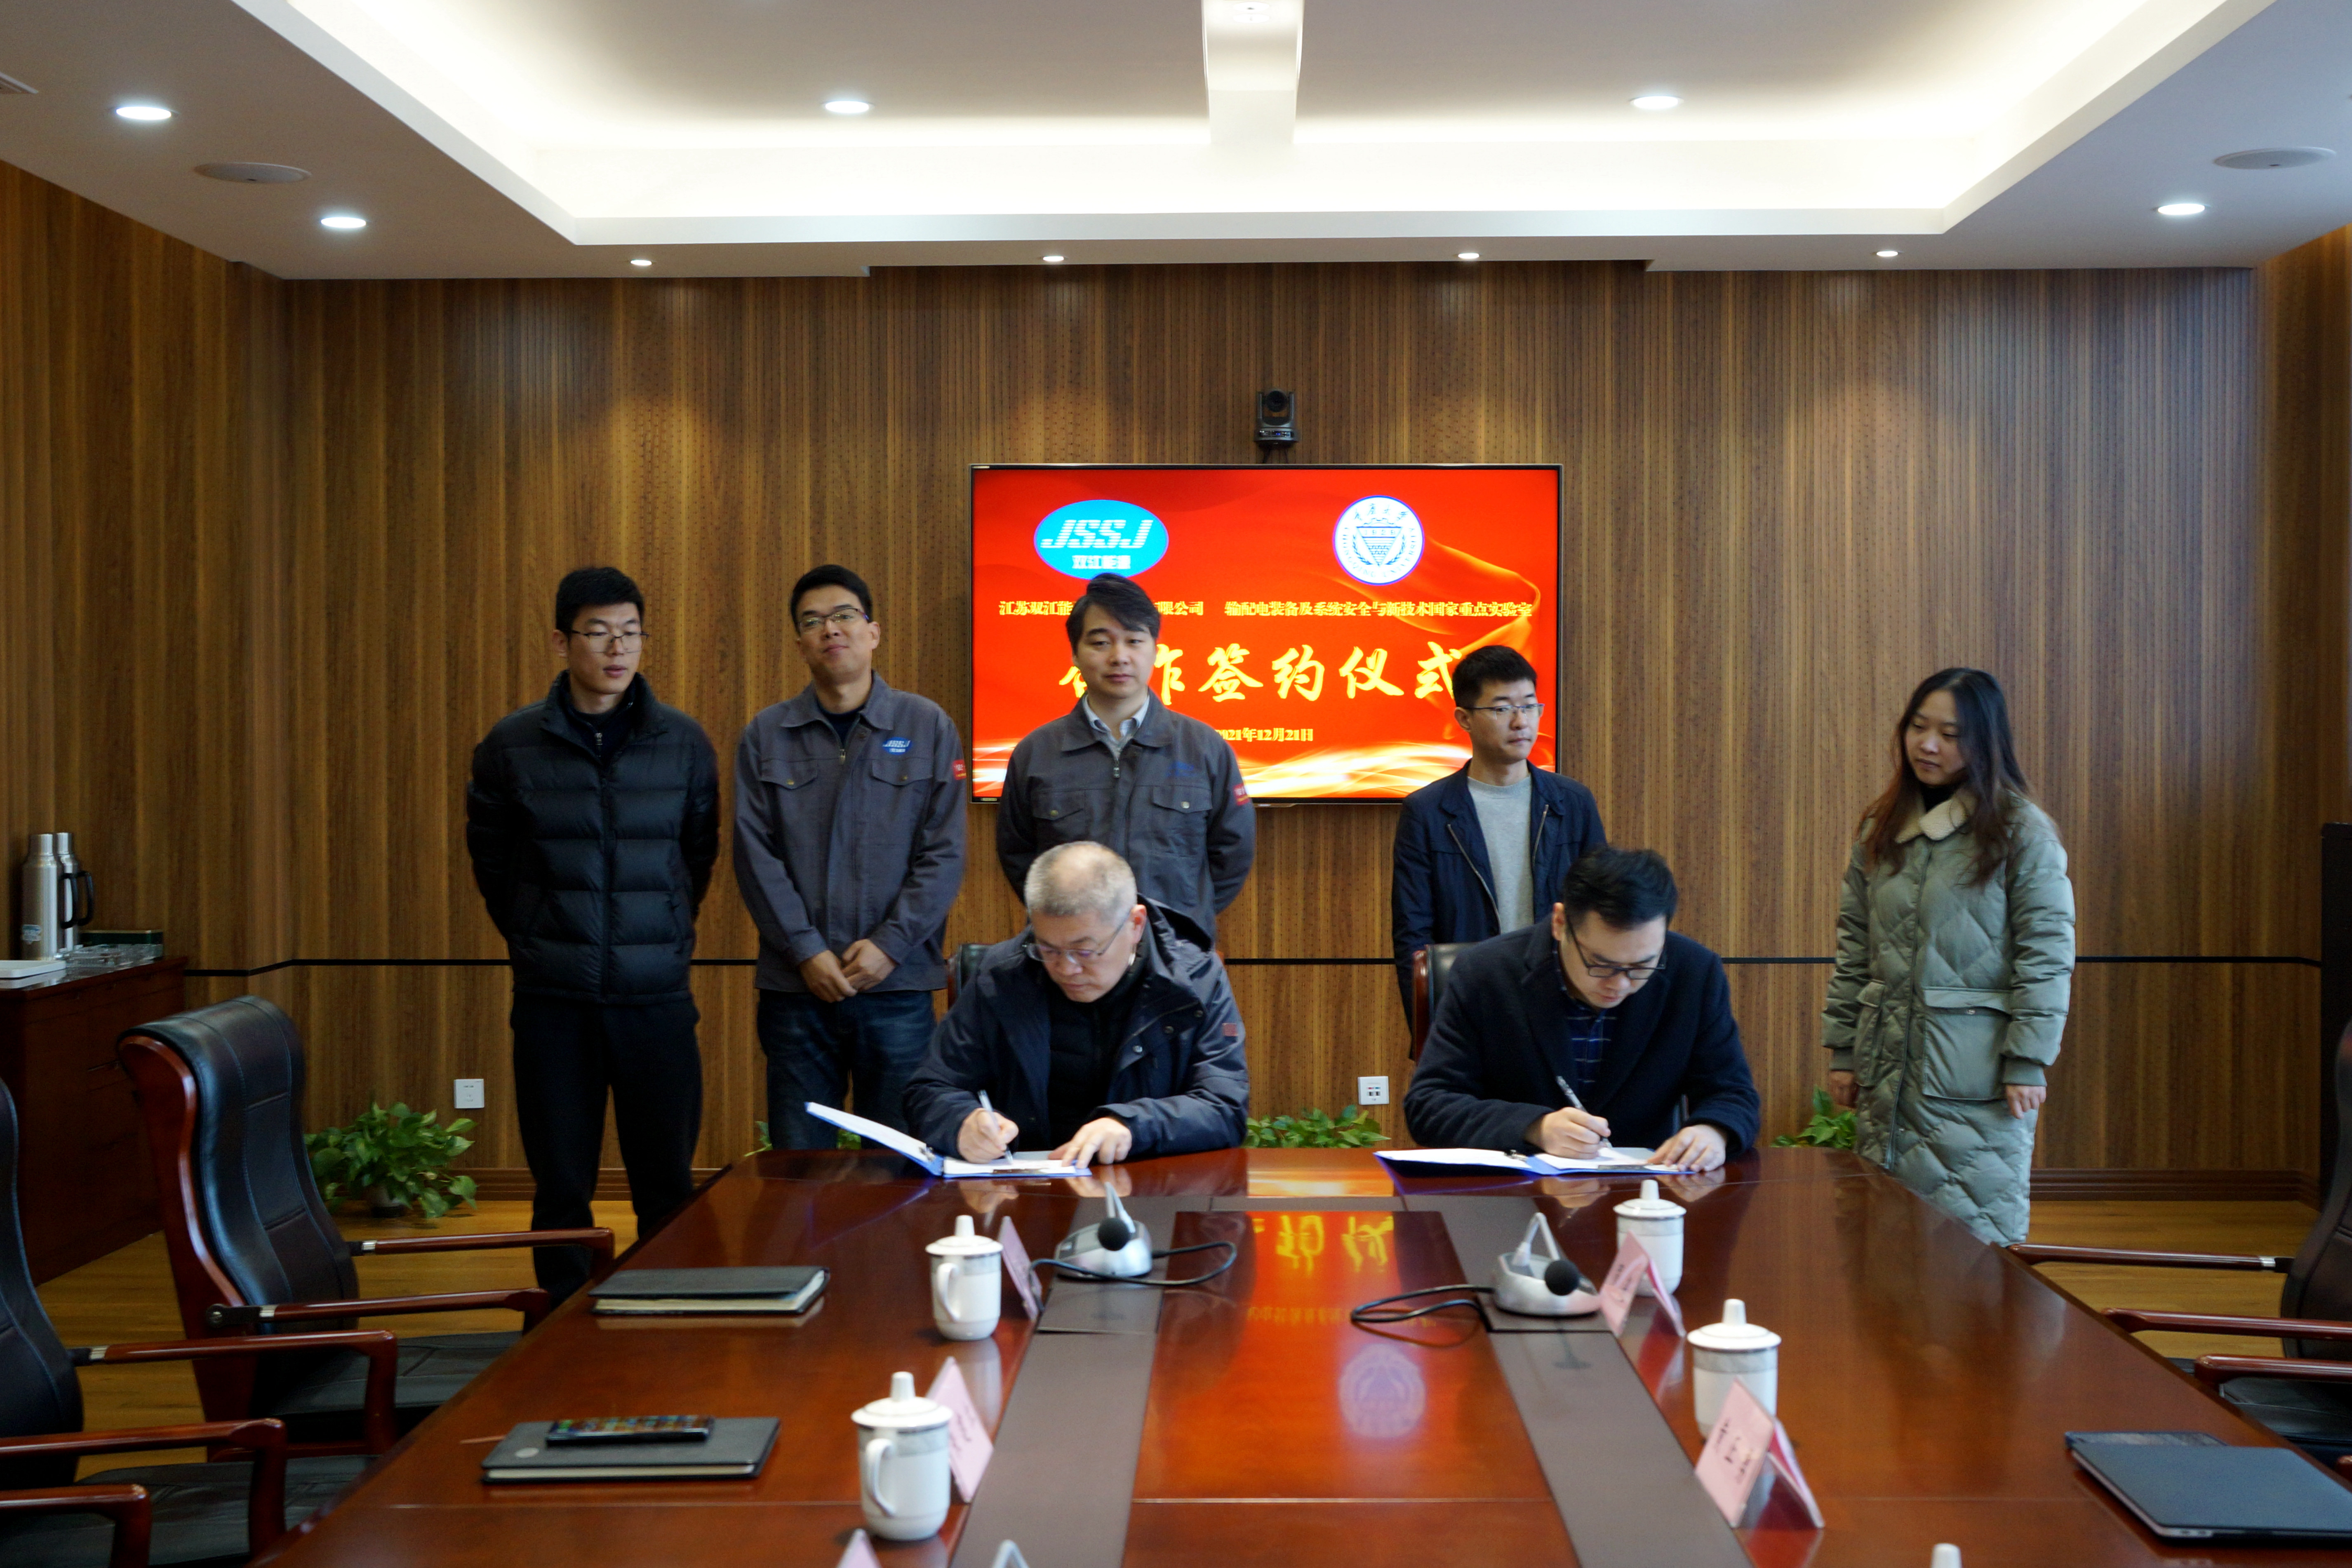 新澳门京葡与重庆大学国家重点实验室签订合作协议